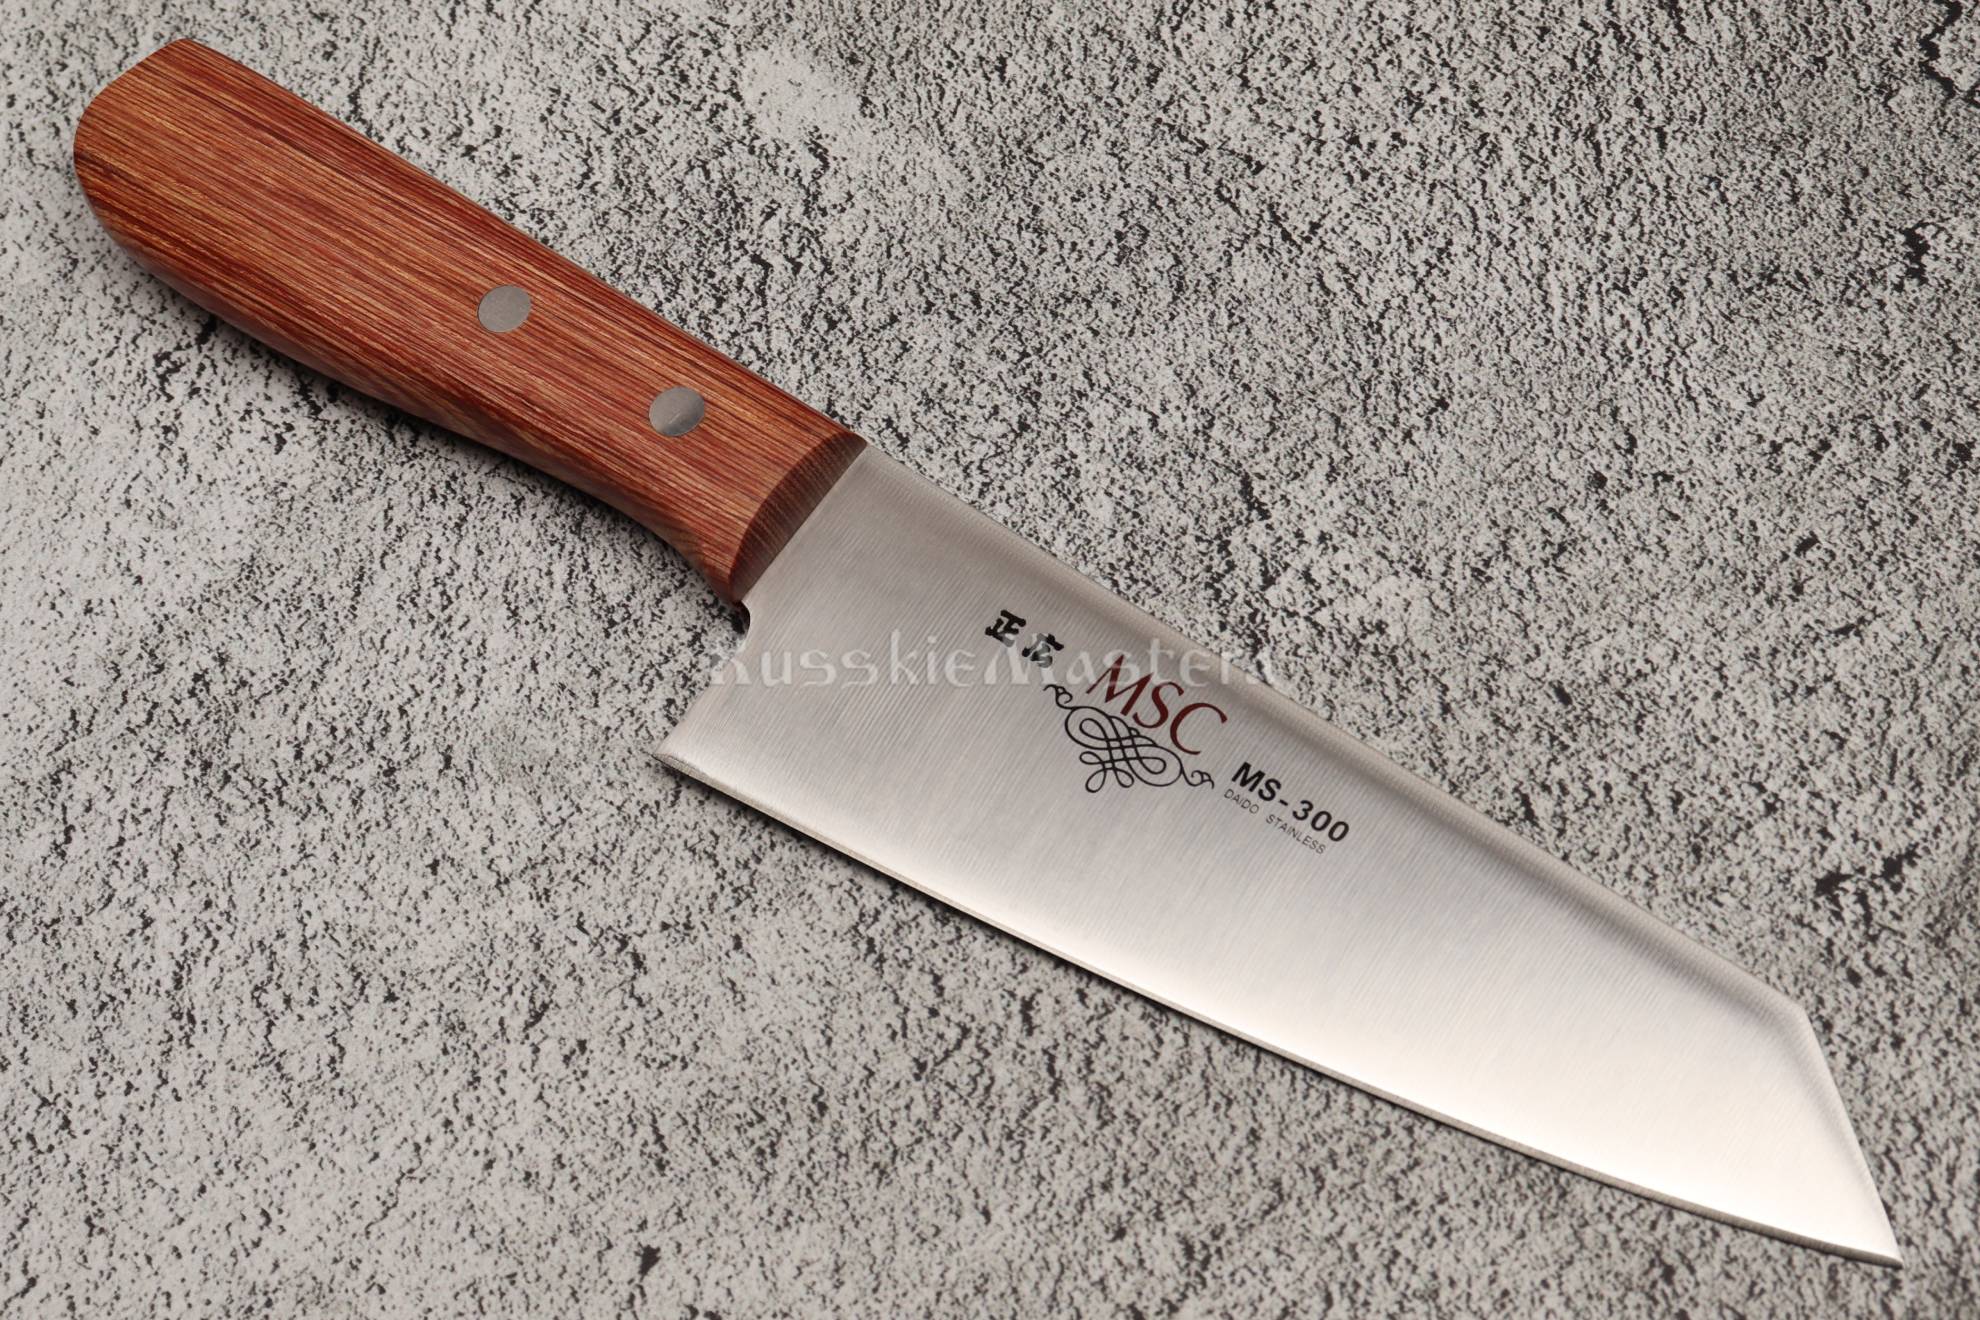 Кухонный нож из Японии — Киритсуке MSC MS-300, Masahiro. Сталь MBS-26, рукоять Pakka wood.